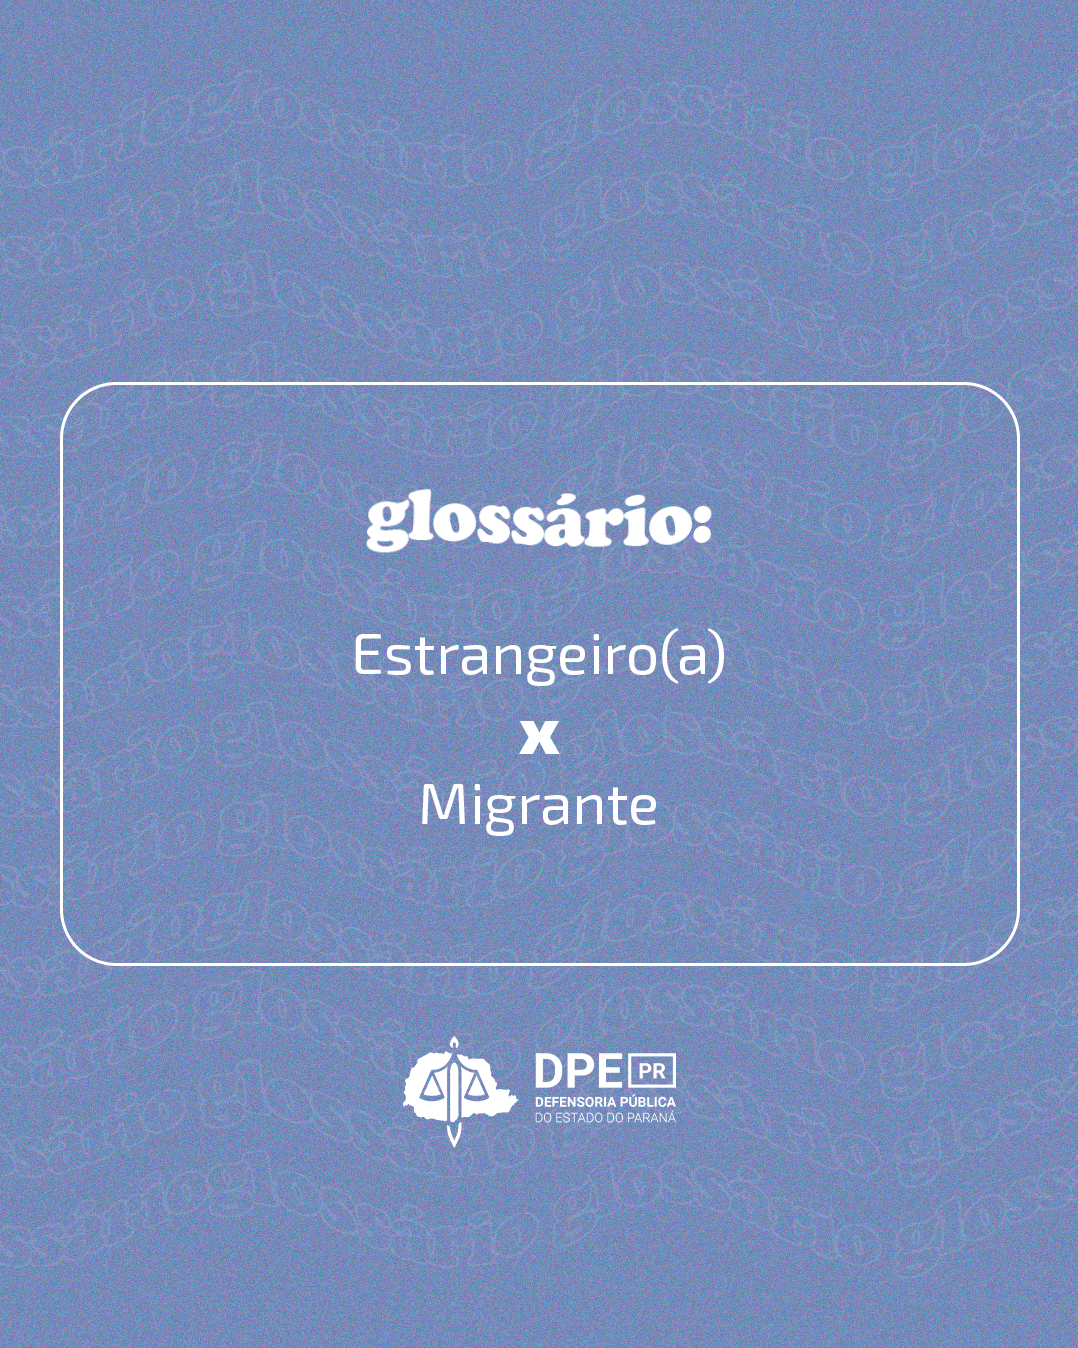 Glossário: Estrangeiro(a) x Migrante